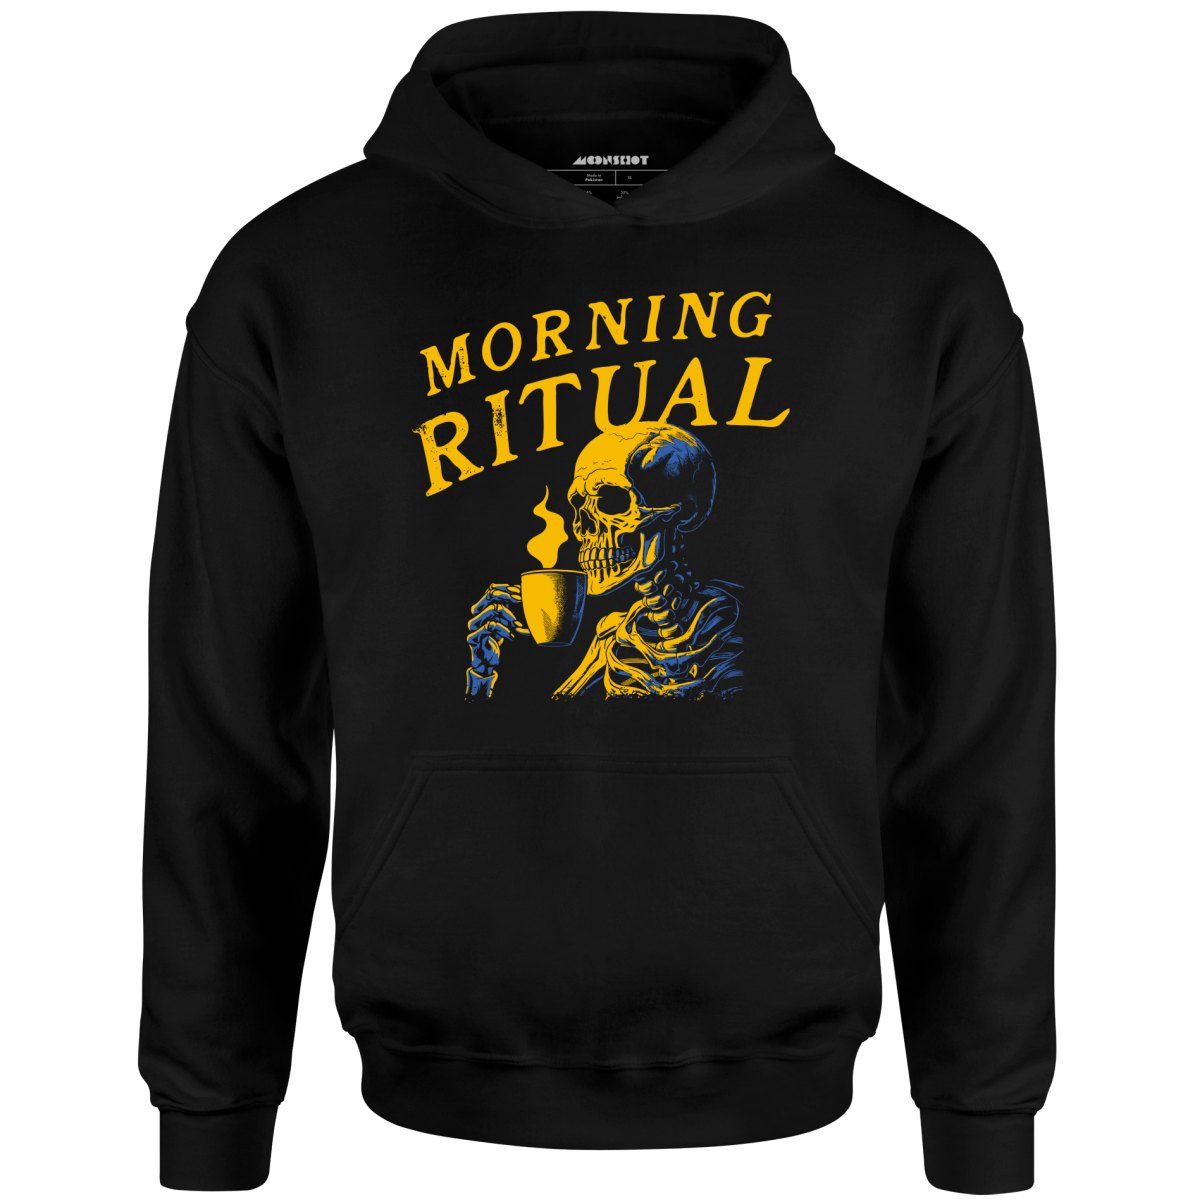 Morning Ritual - Unisex Hoodie